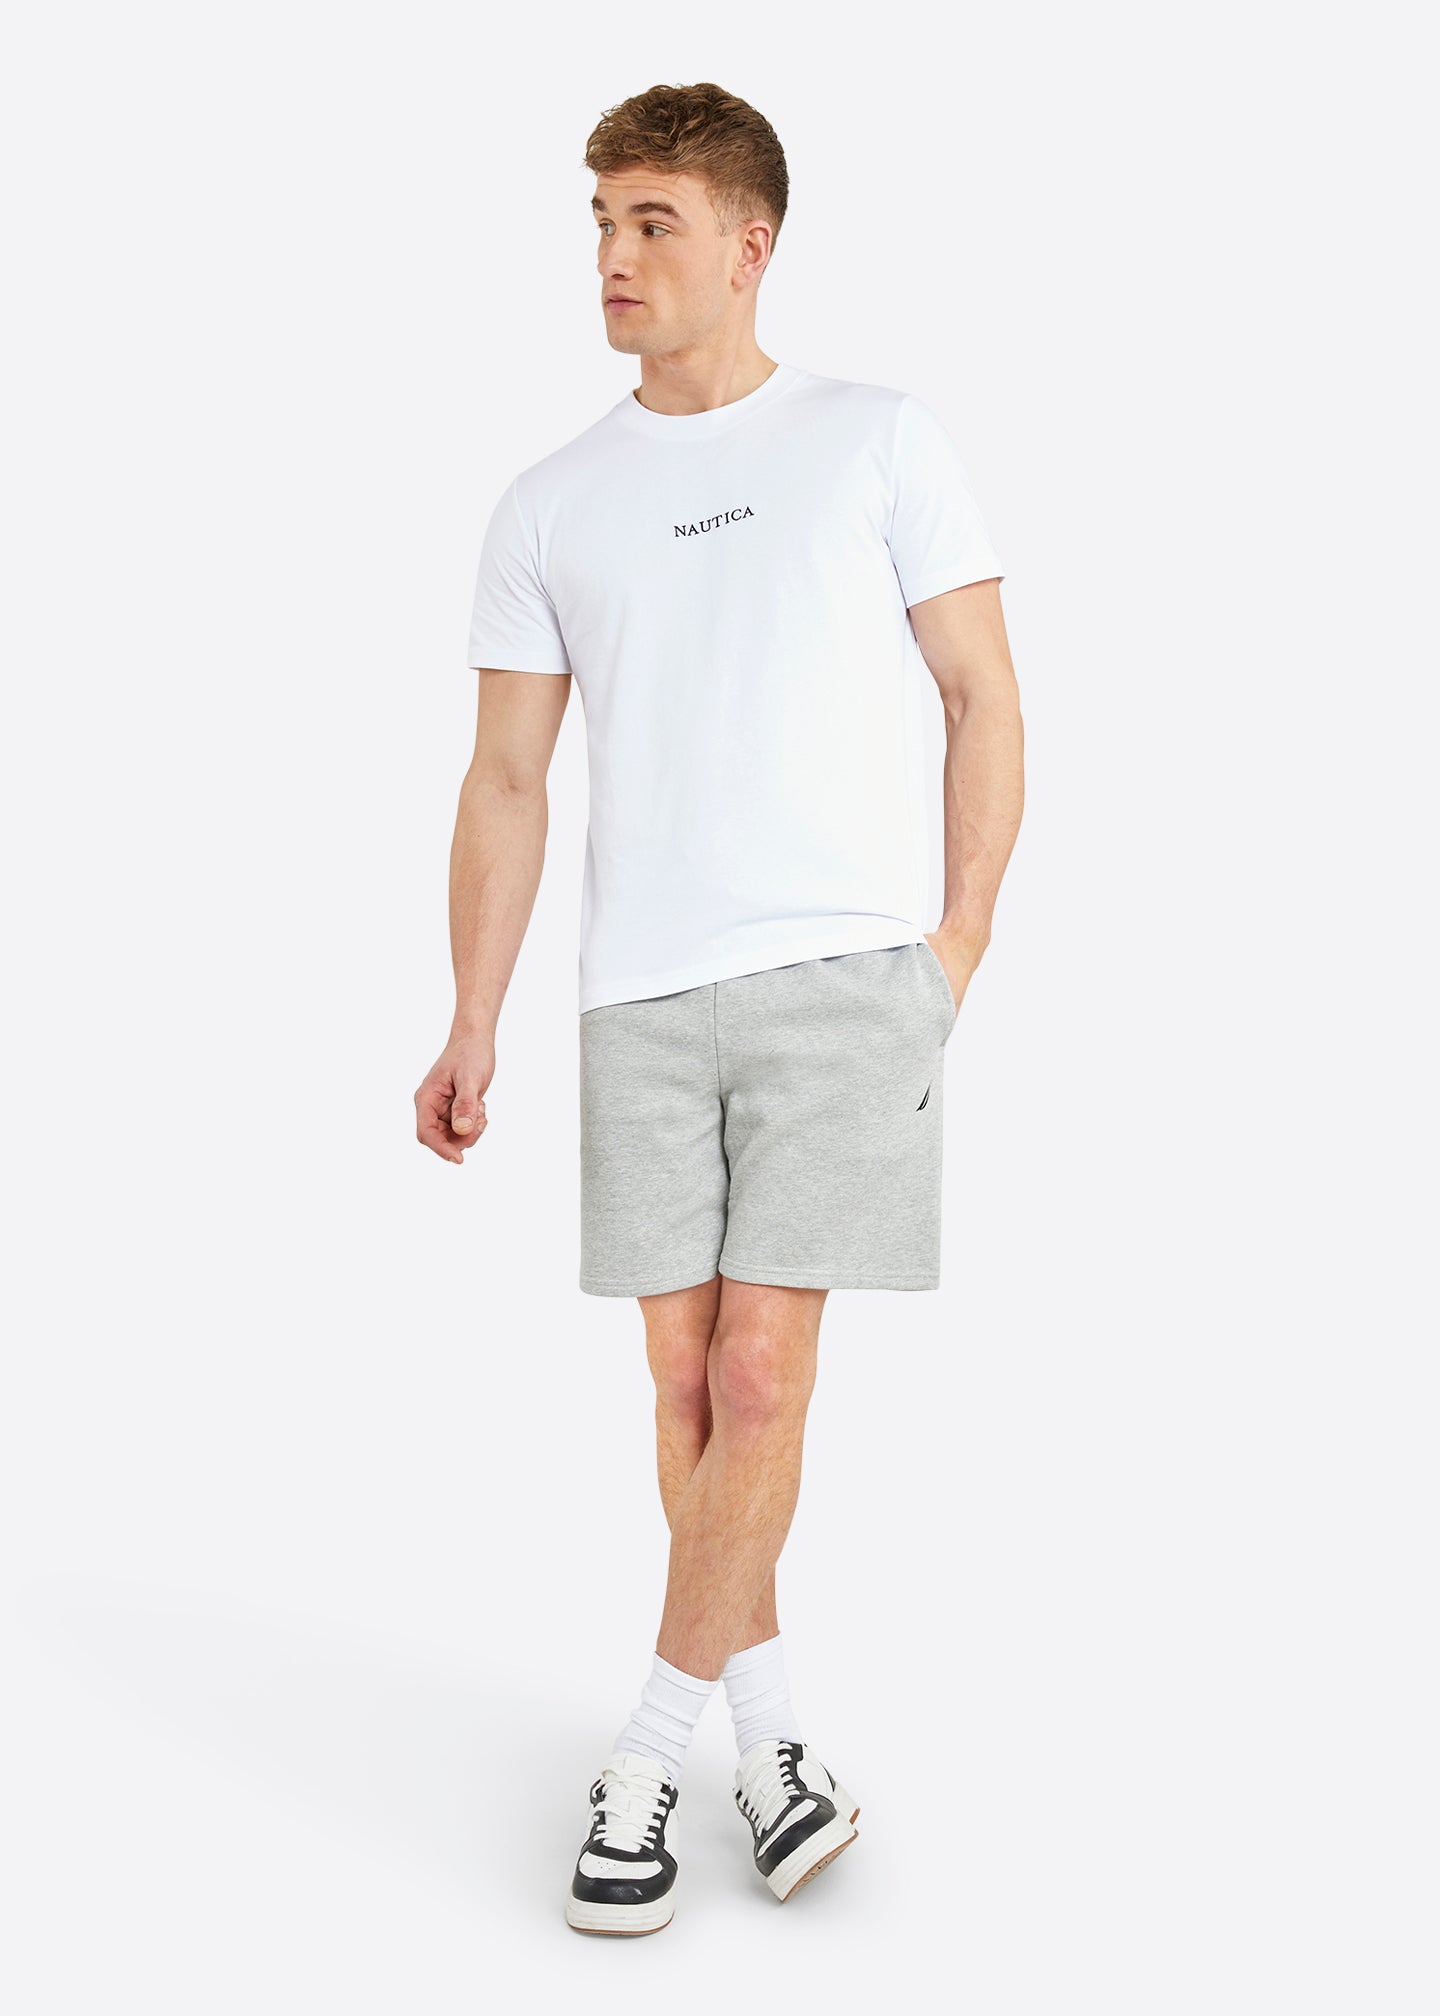 Nautica Ybor T-Shirt - White - Full Body